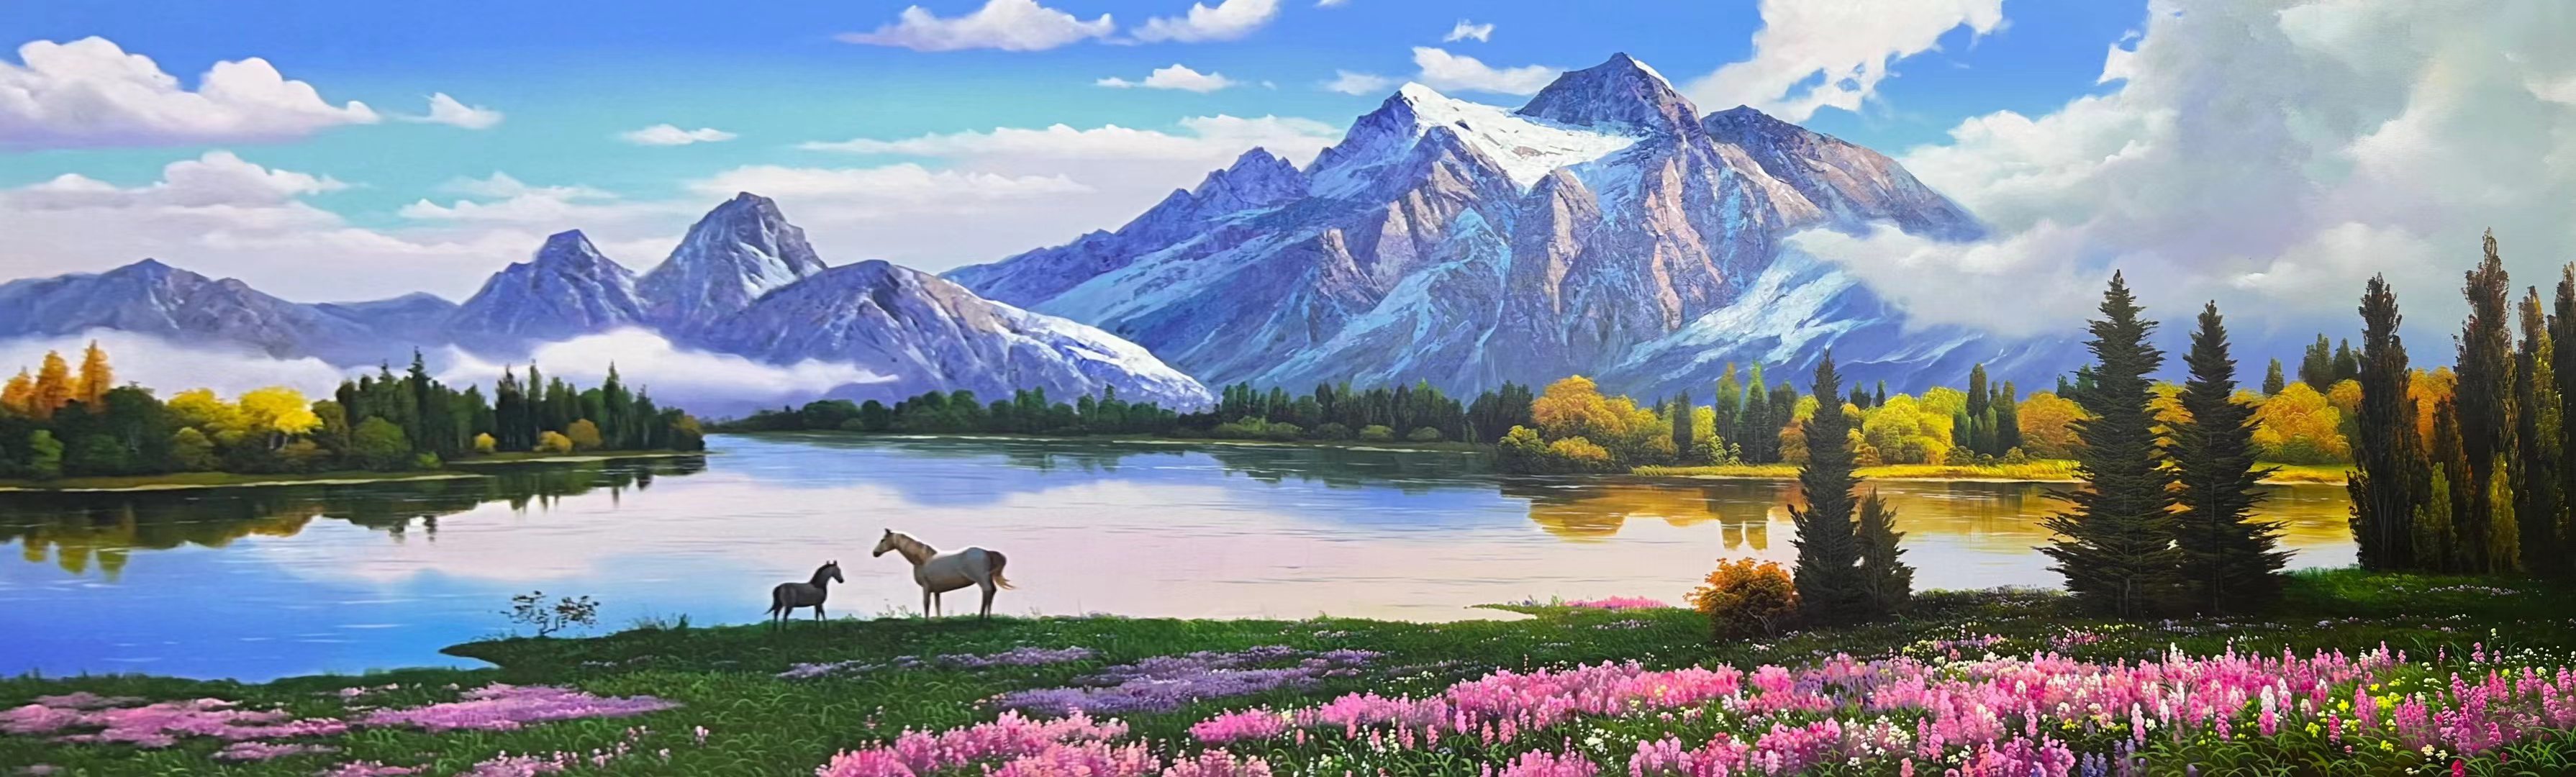 朝鲜唯美风景油画图片